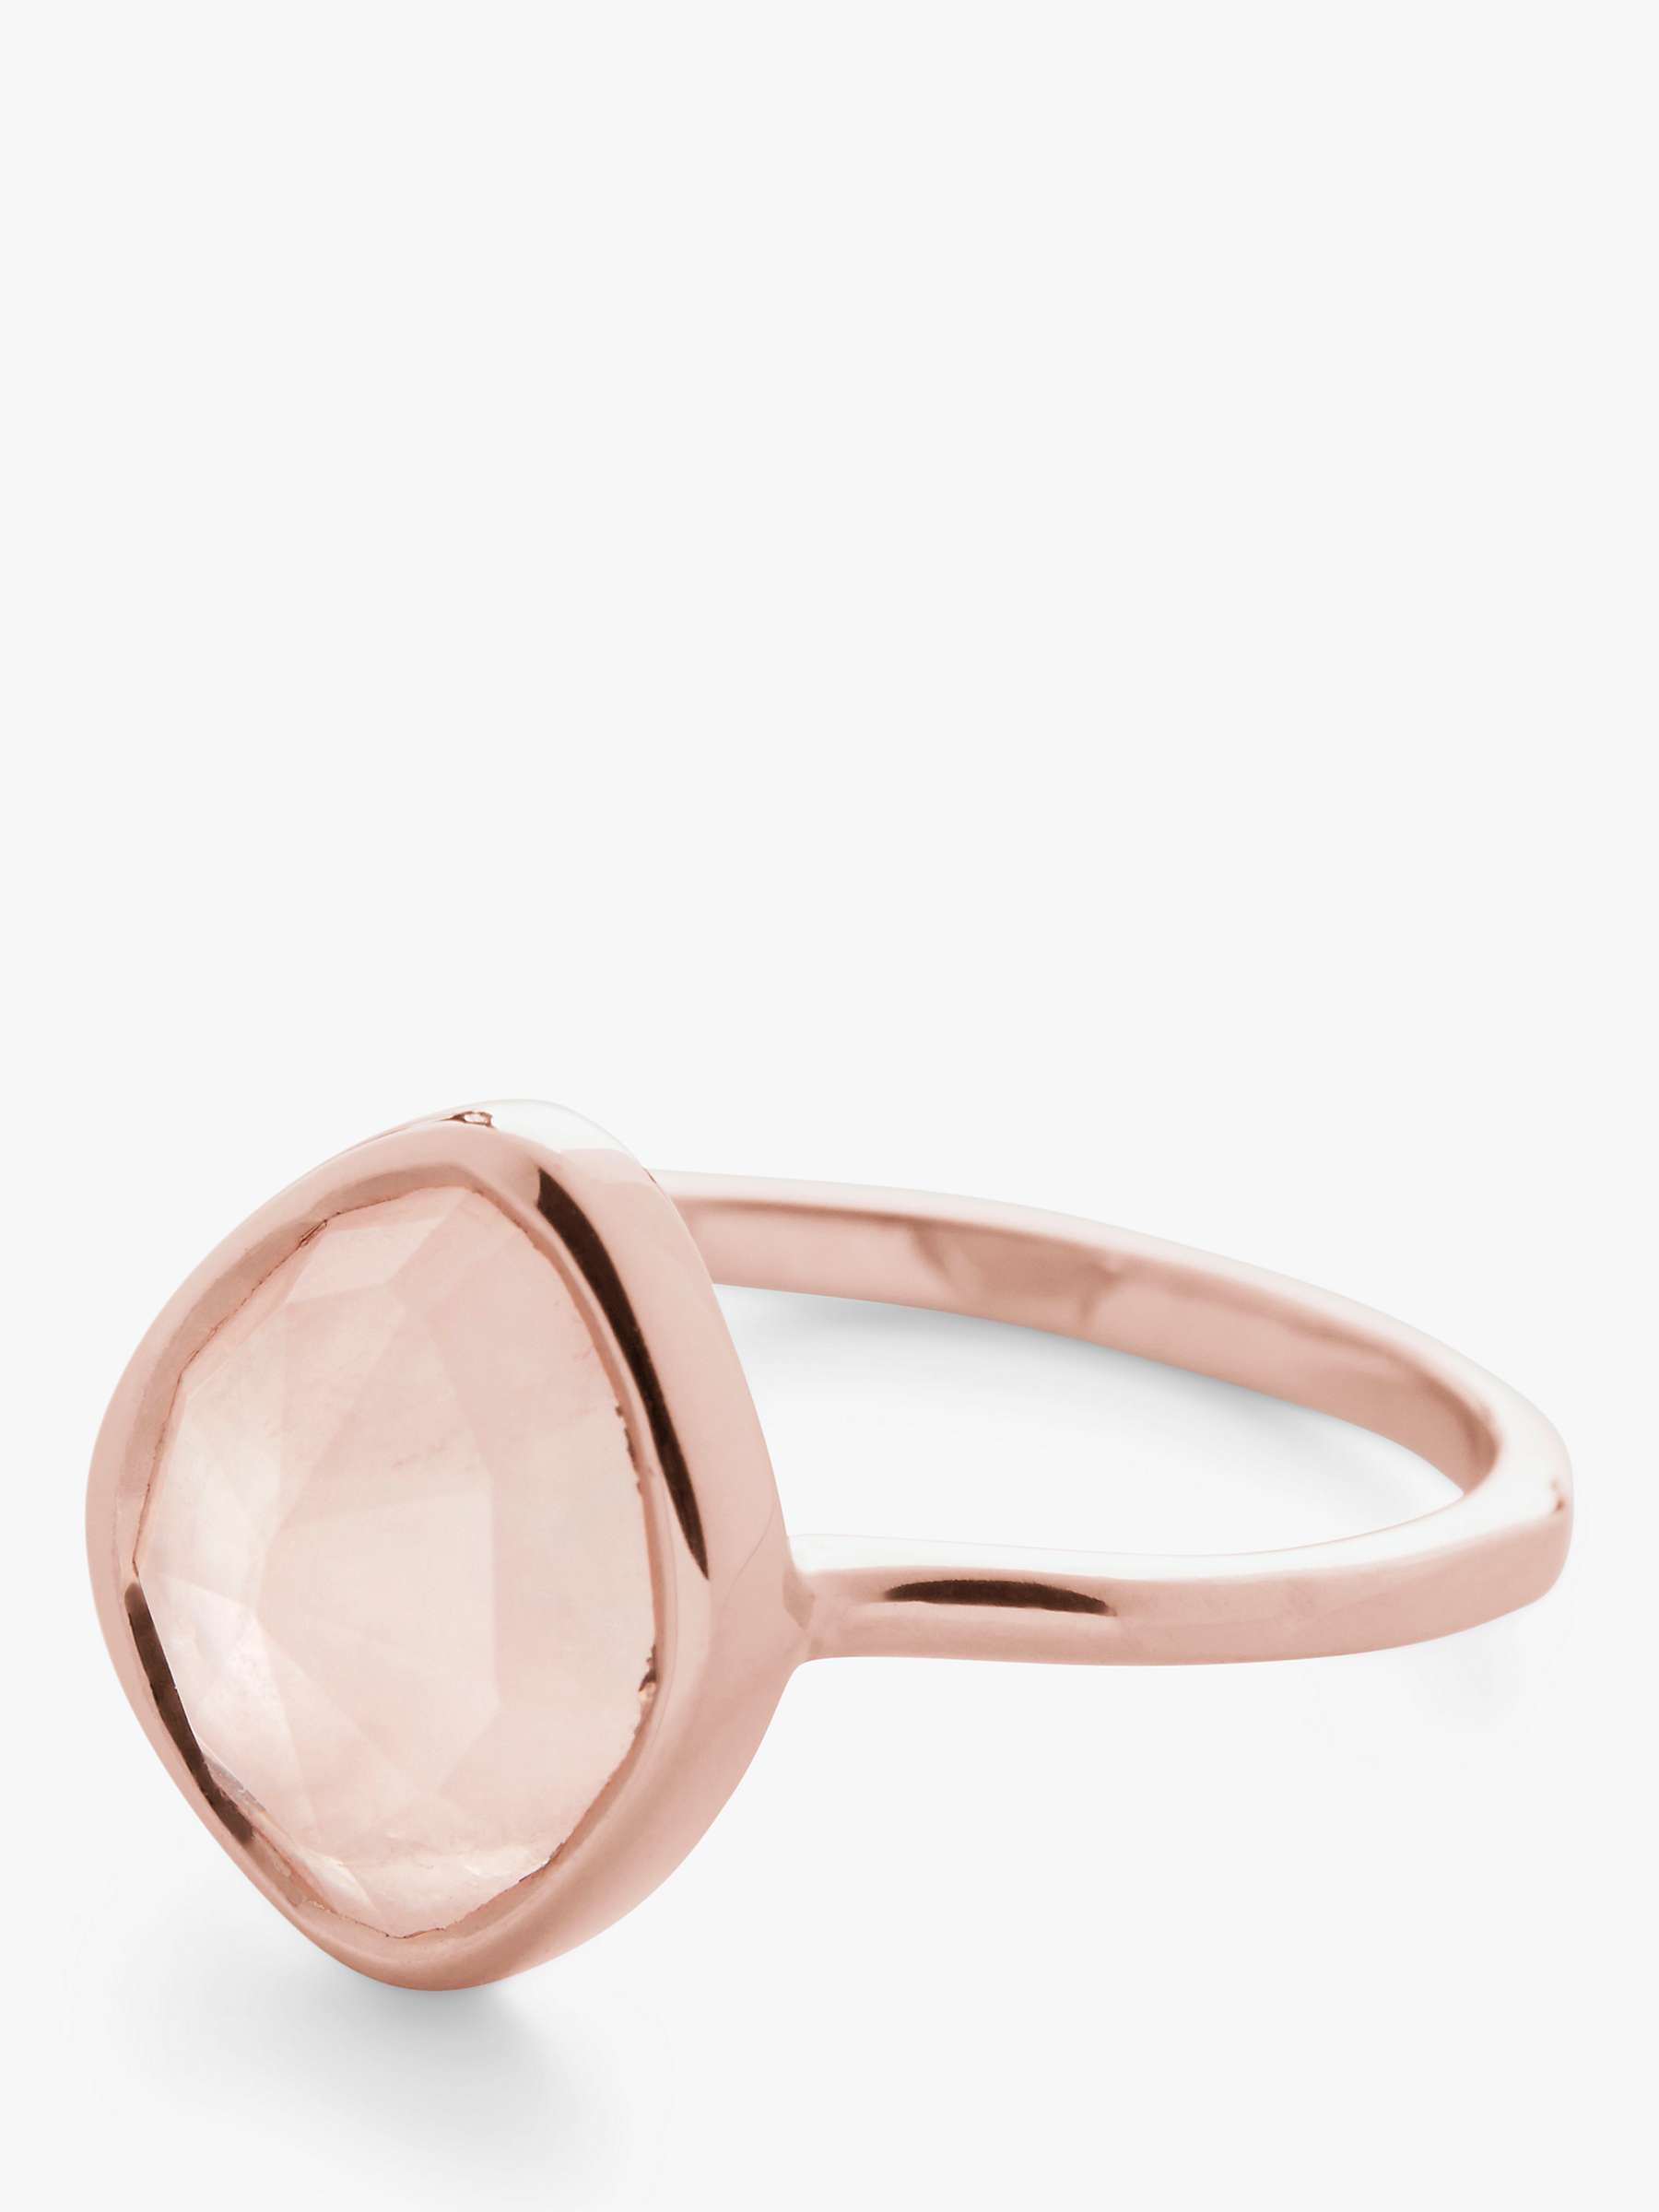 Buy Monica Vinader Siren Nugget Rose Quartz Ring, Rose Gold Online at johnlewis.com